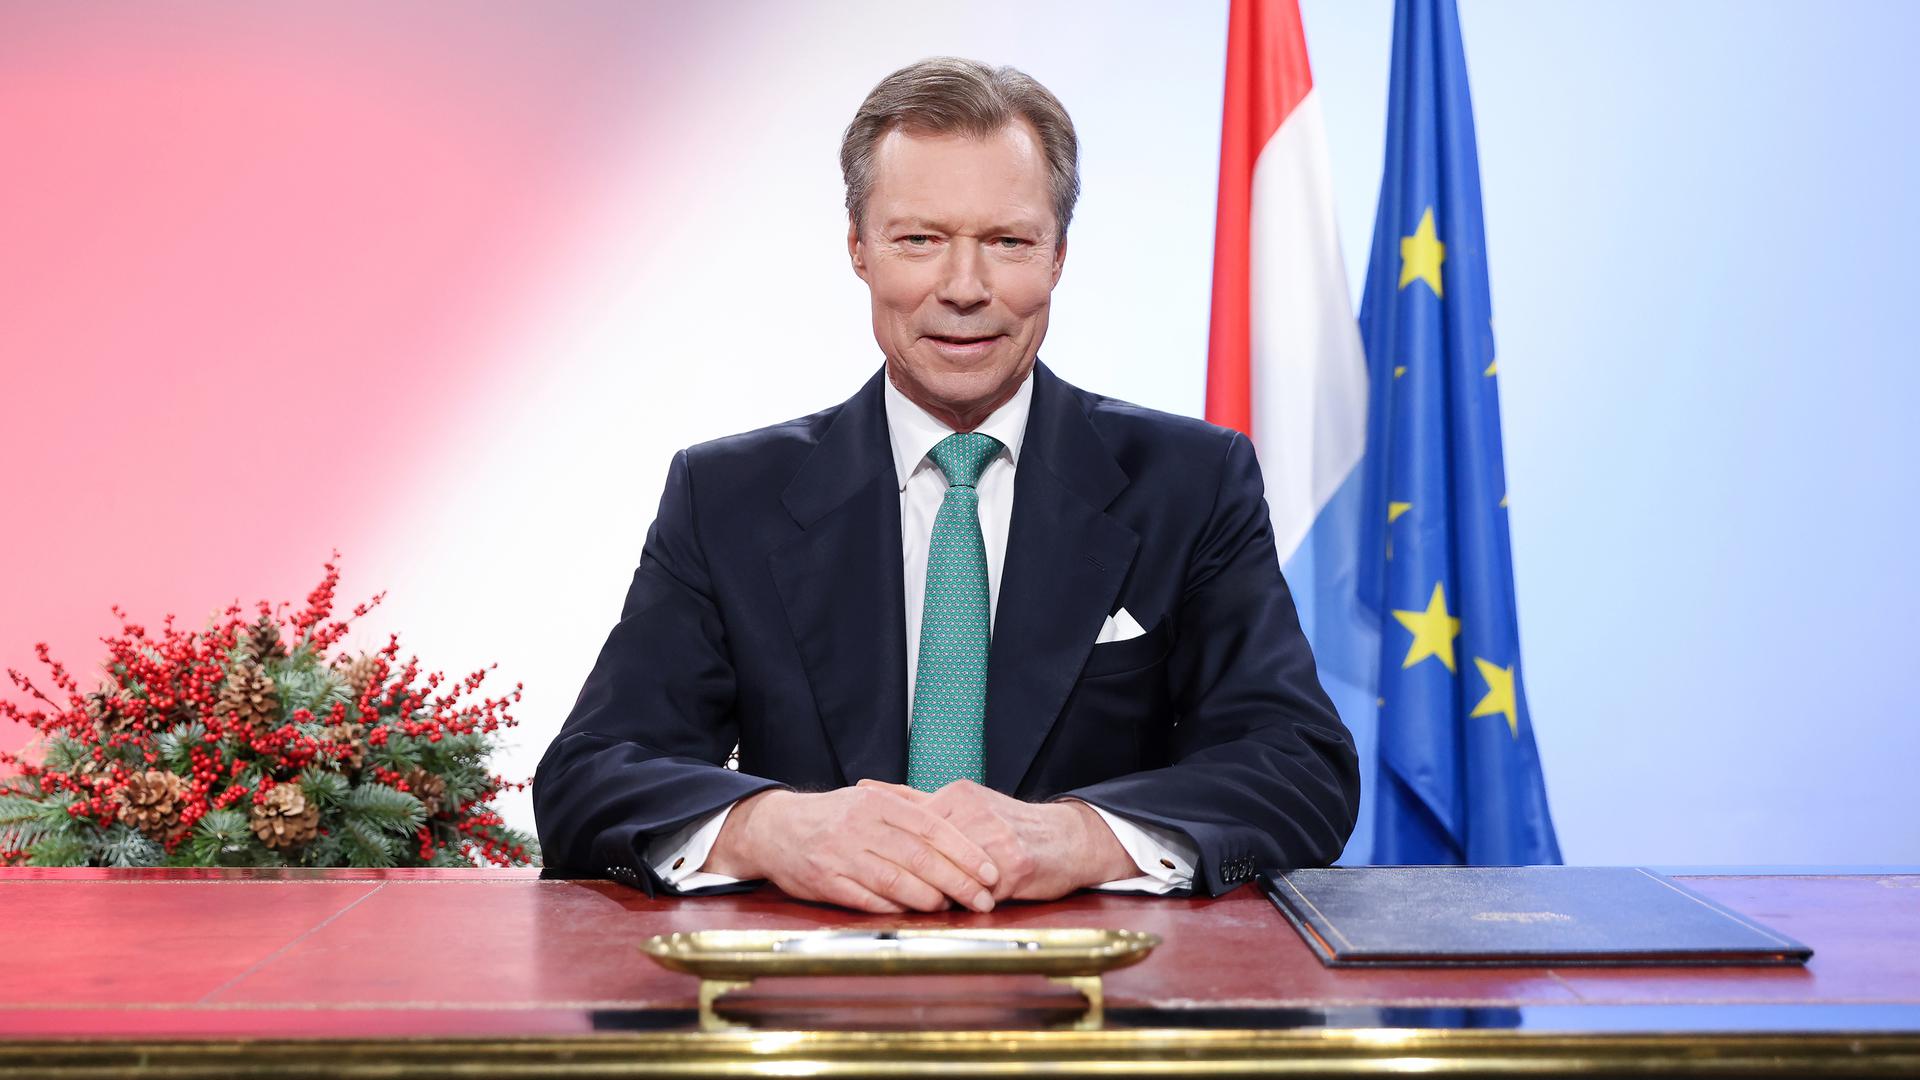 "O Luxemburgo consegue ultrapassar estes tempos difíceis", afirmou o Grão-Duque com otimismo.